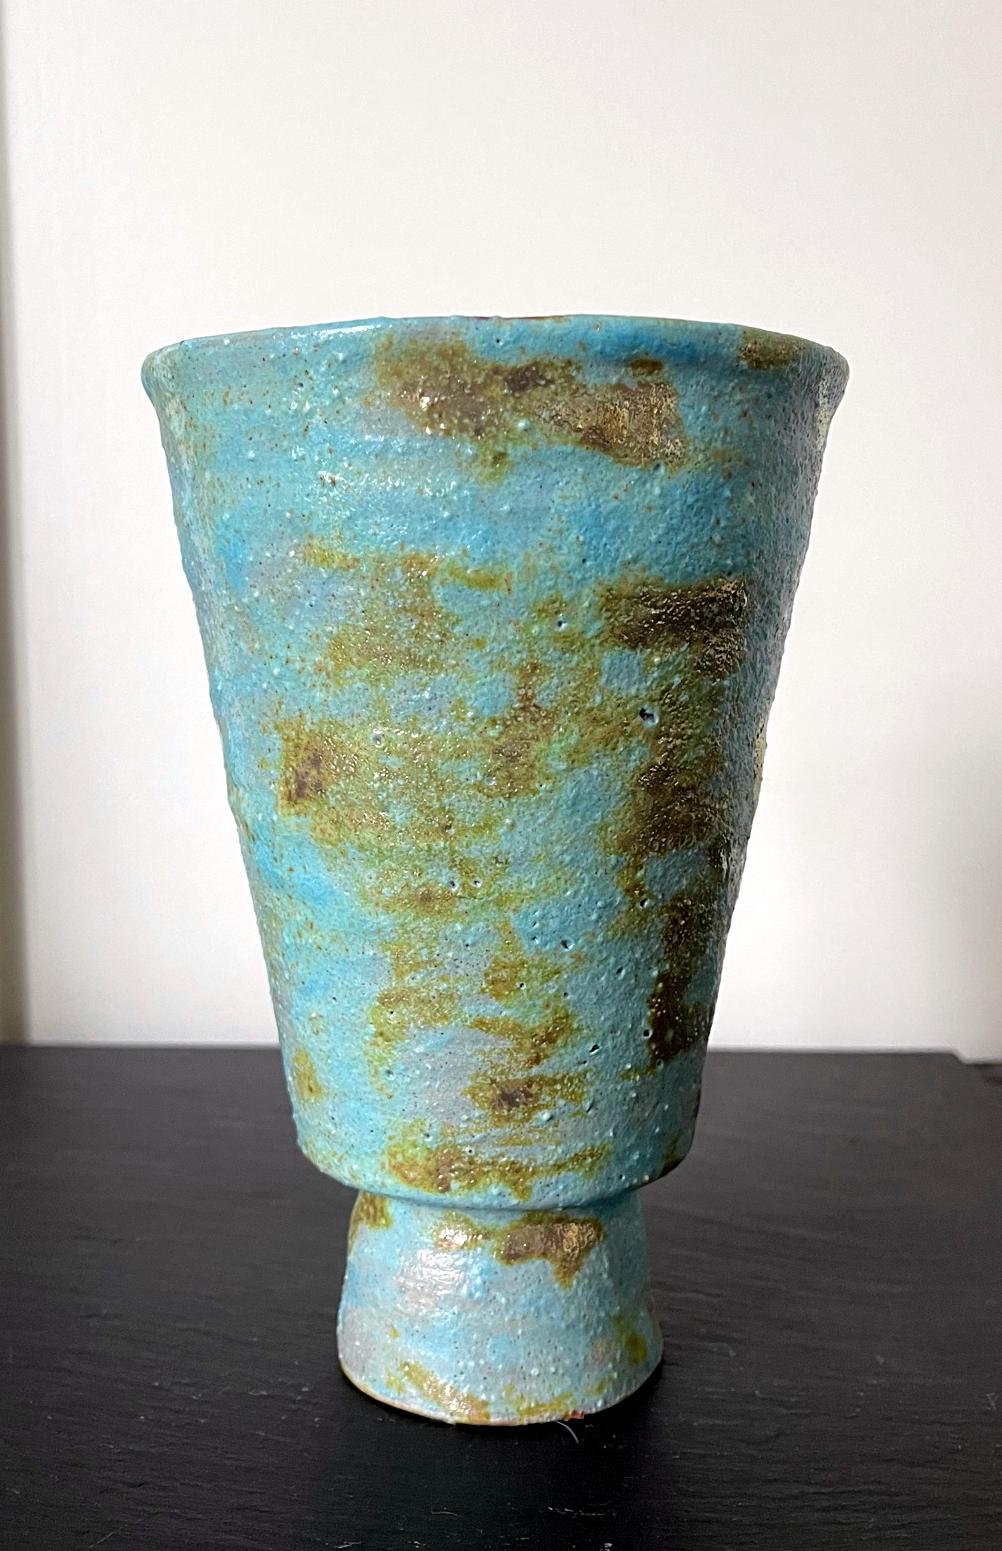 Vase en céramique de l'artiste et potier d'atelier américain Beatrice Wood (1893-1998). La pièce, datant des années 1960-80, est recouverte d'une magnifique glaçure volcanique de couleur turquoise avec des éclaboussures de taches de lustre